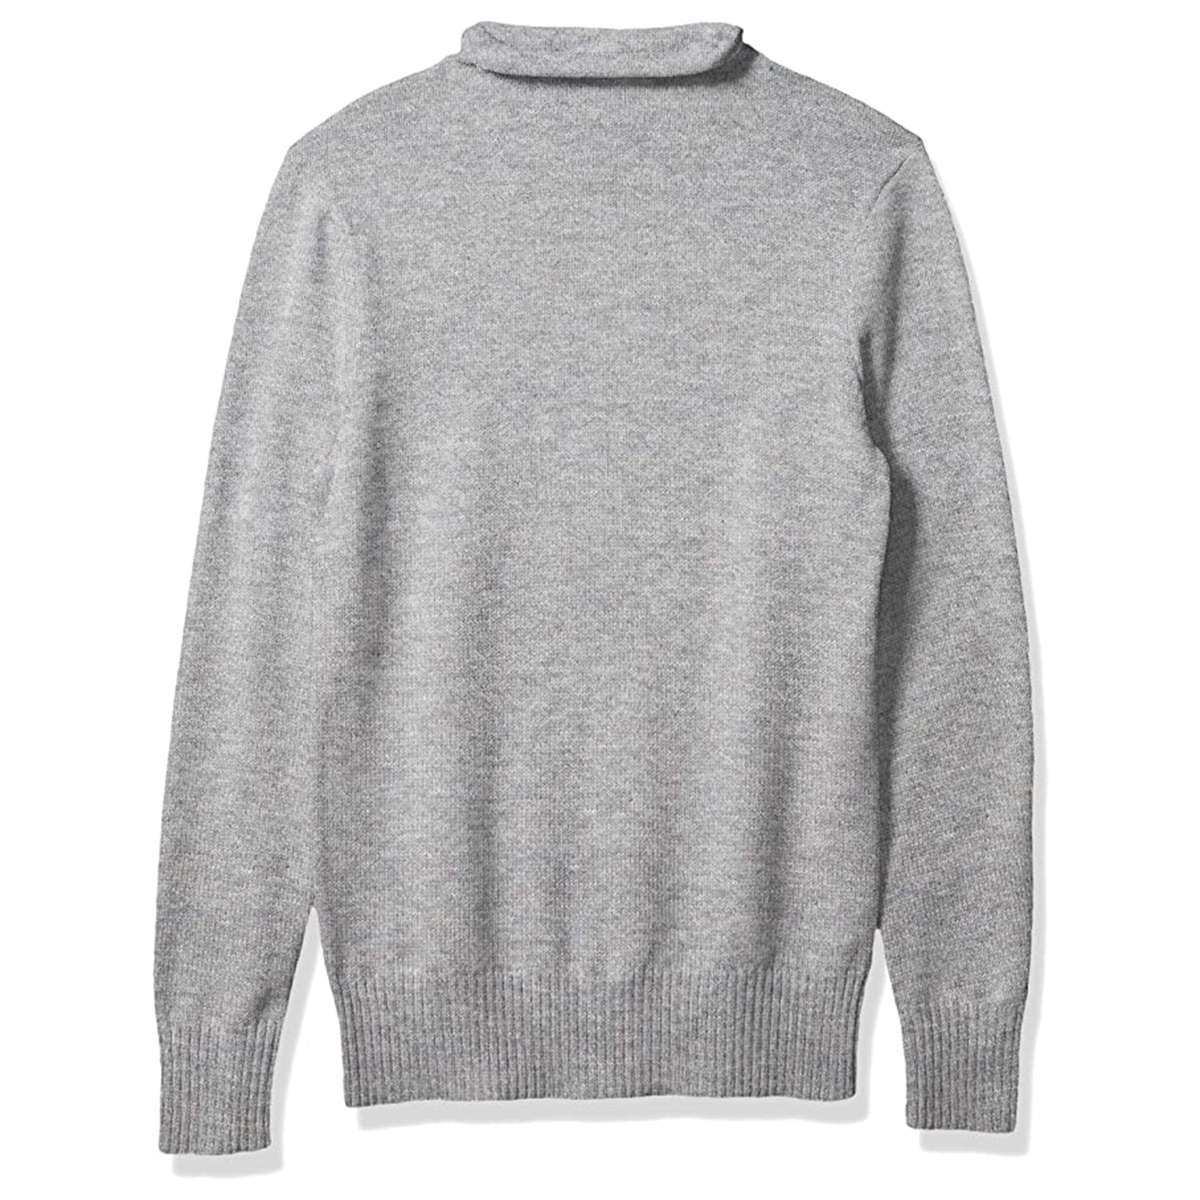 Private label sweater sale